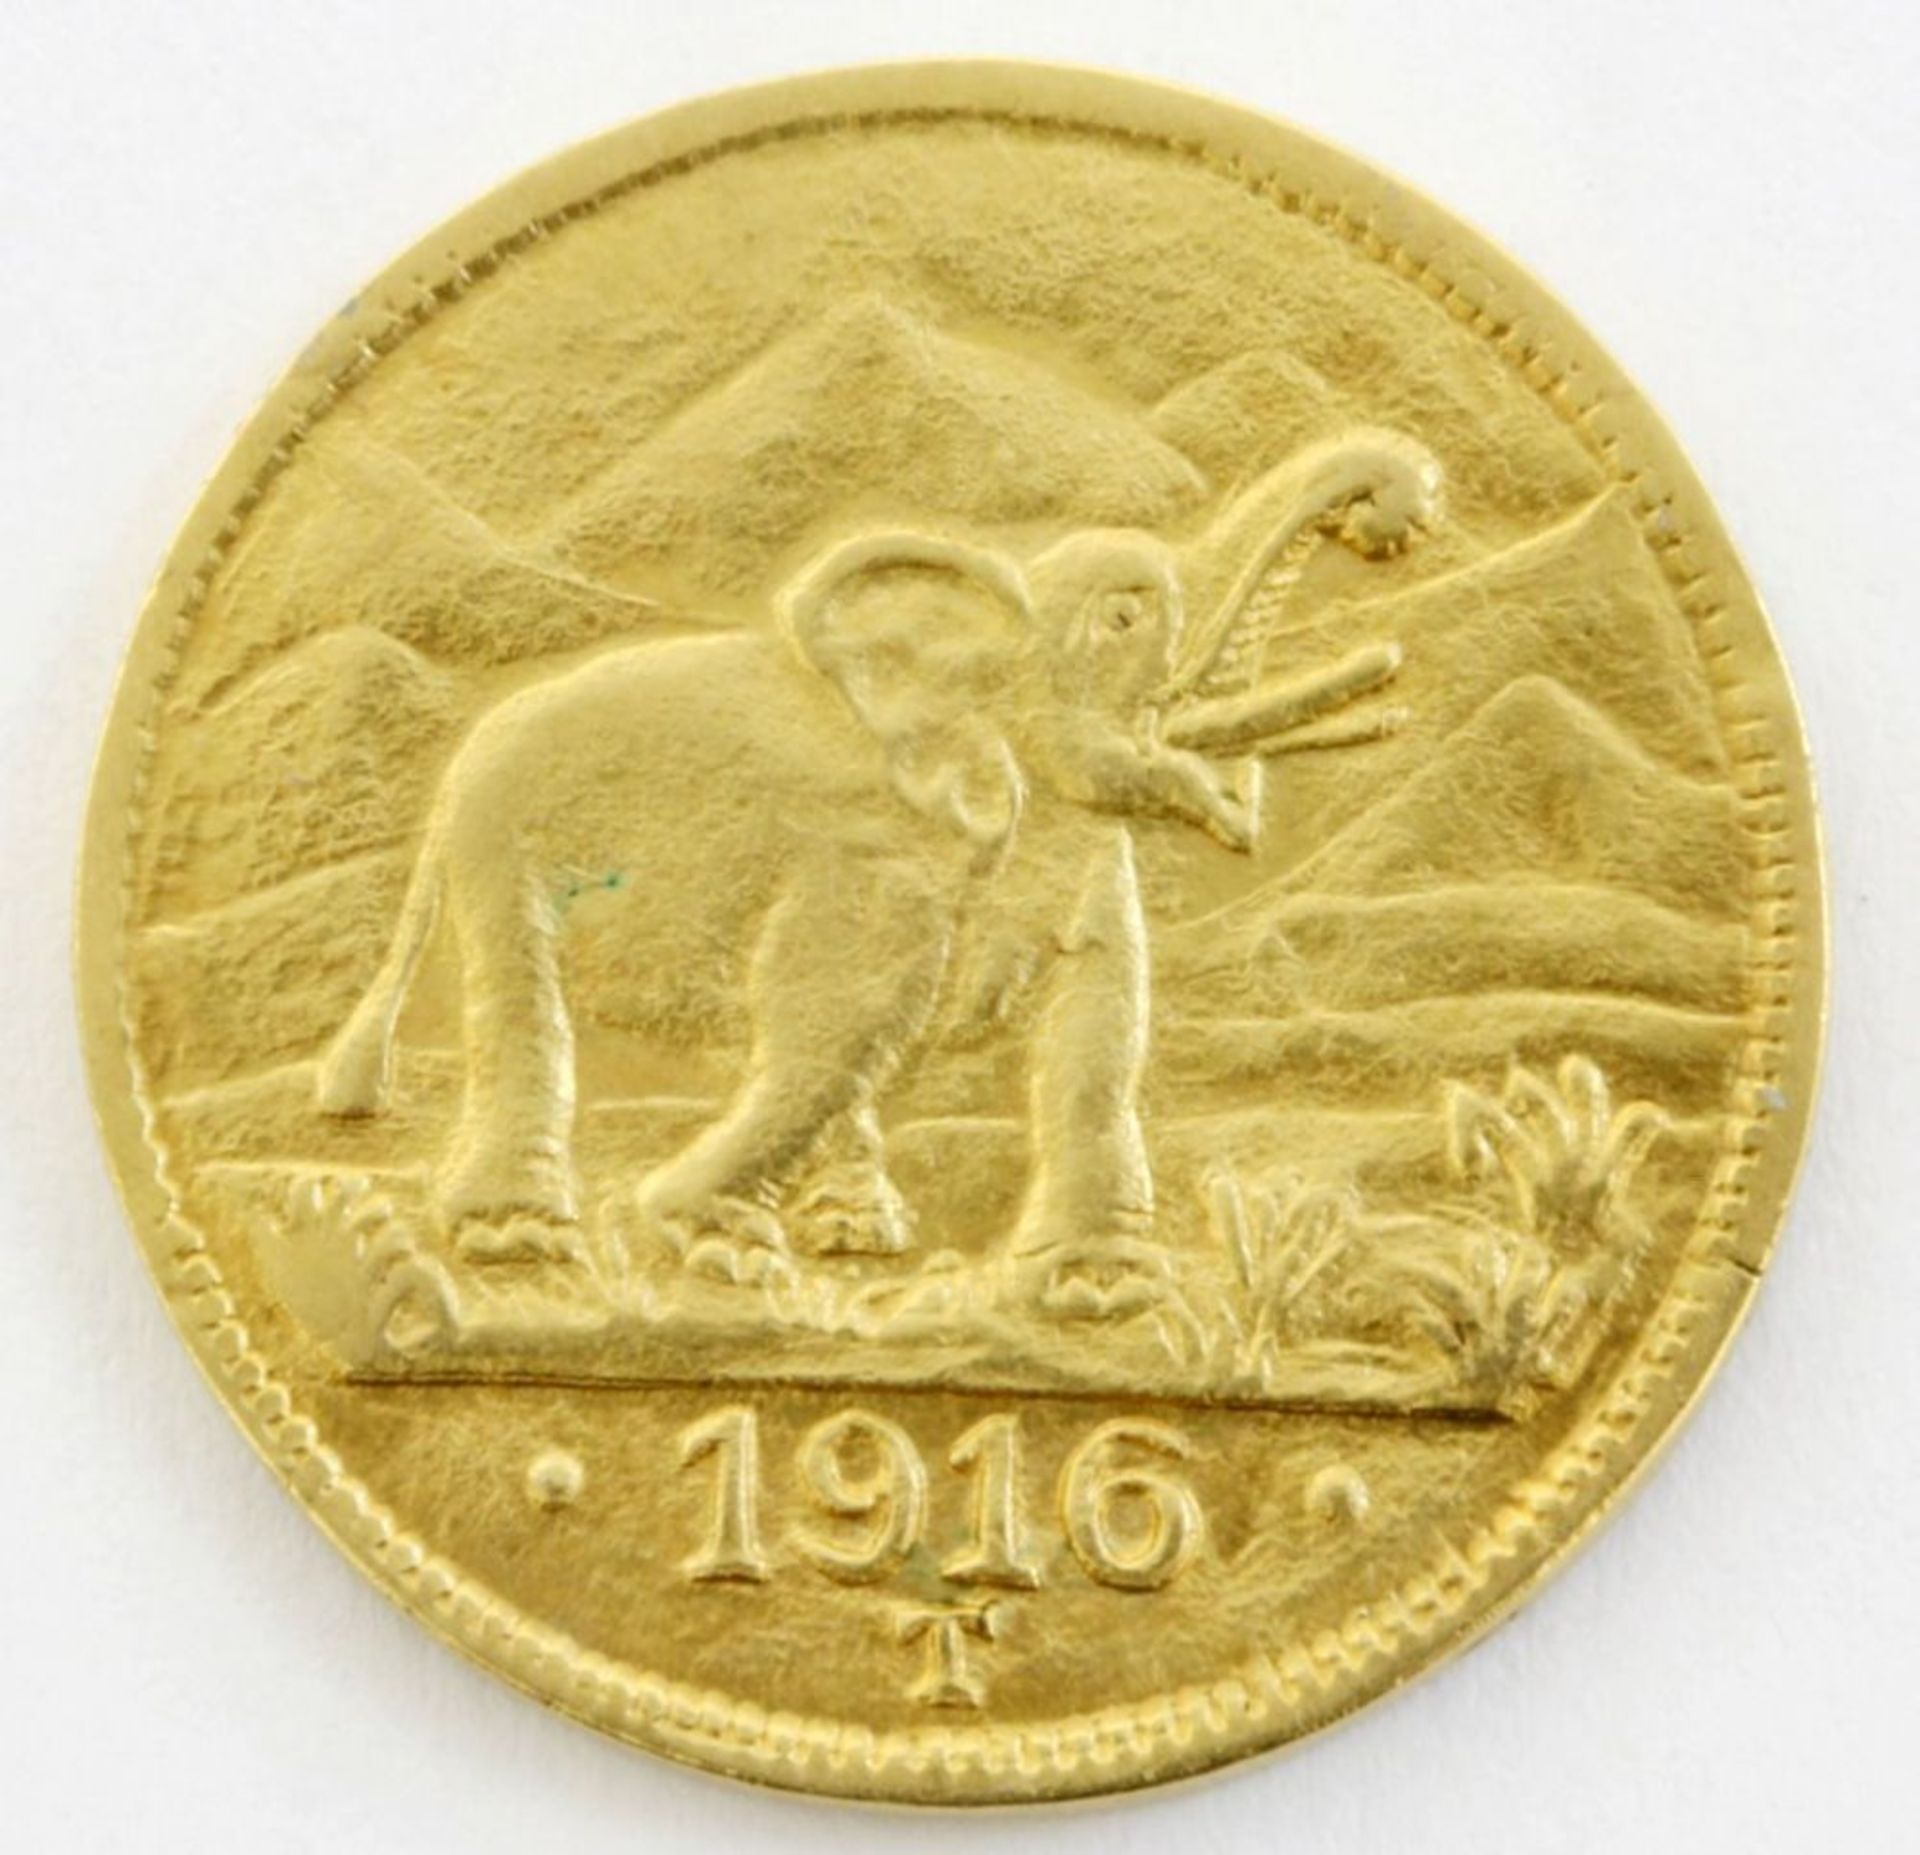 Goldmünze 15 Rupien  "Deutsch Ostafrika" - 1916  Prägezeichen T (Tabora), Elefant / Reichsadler.